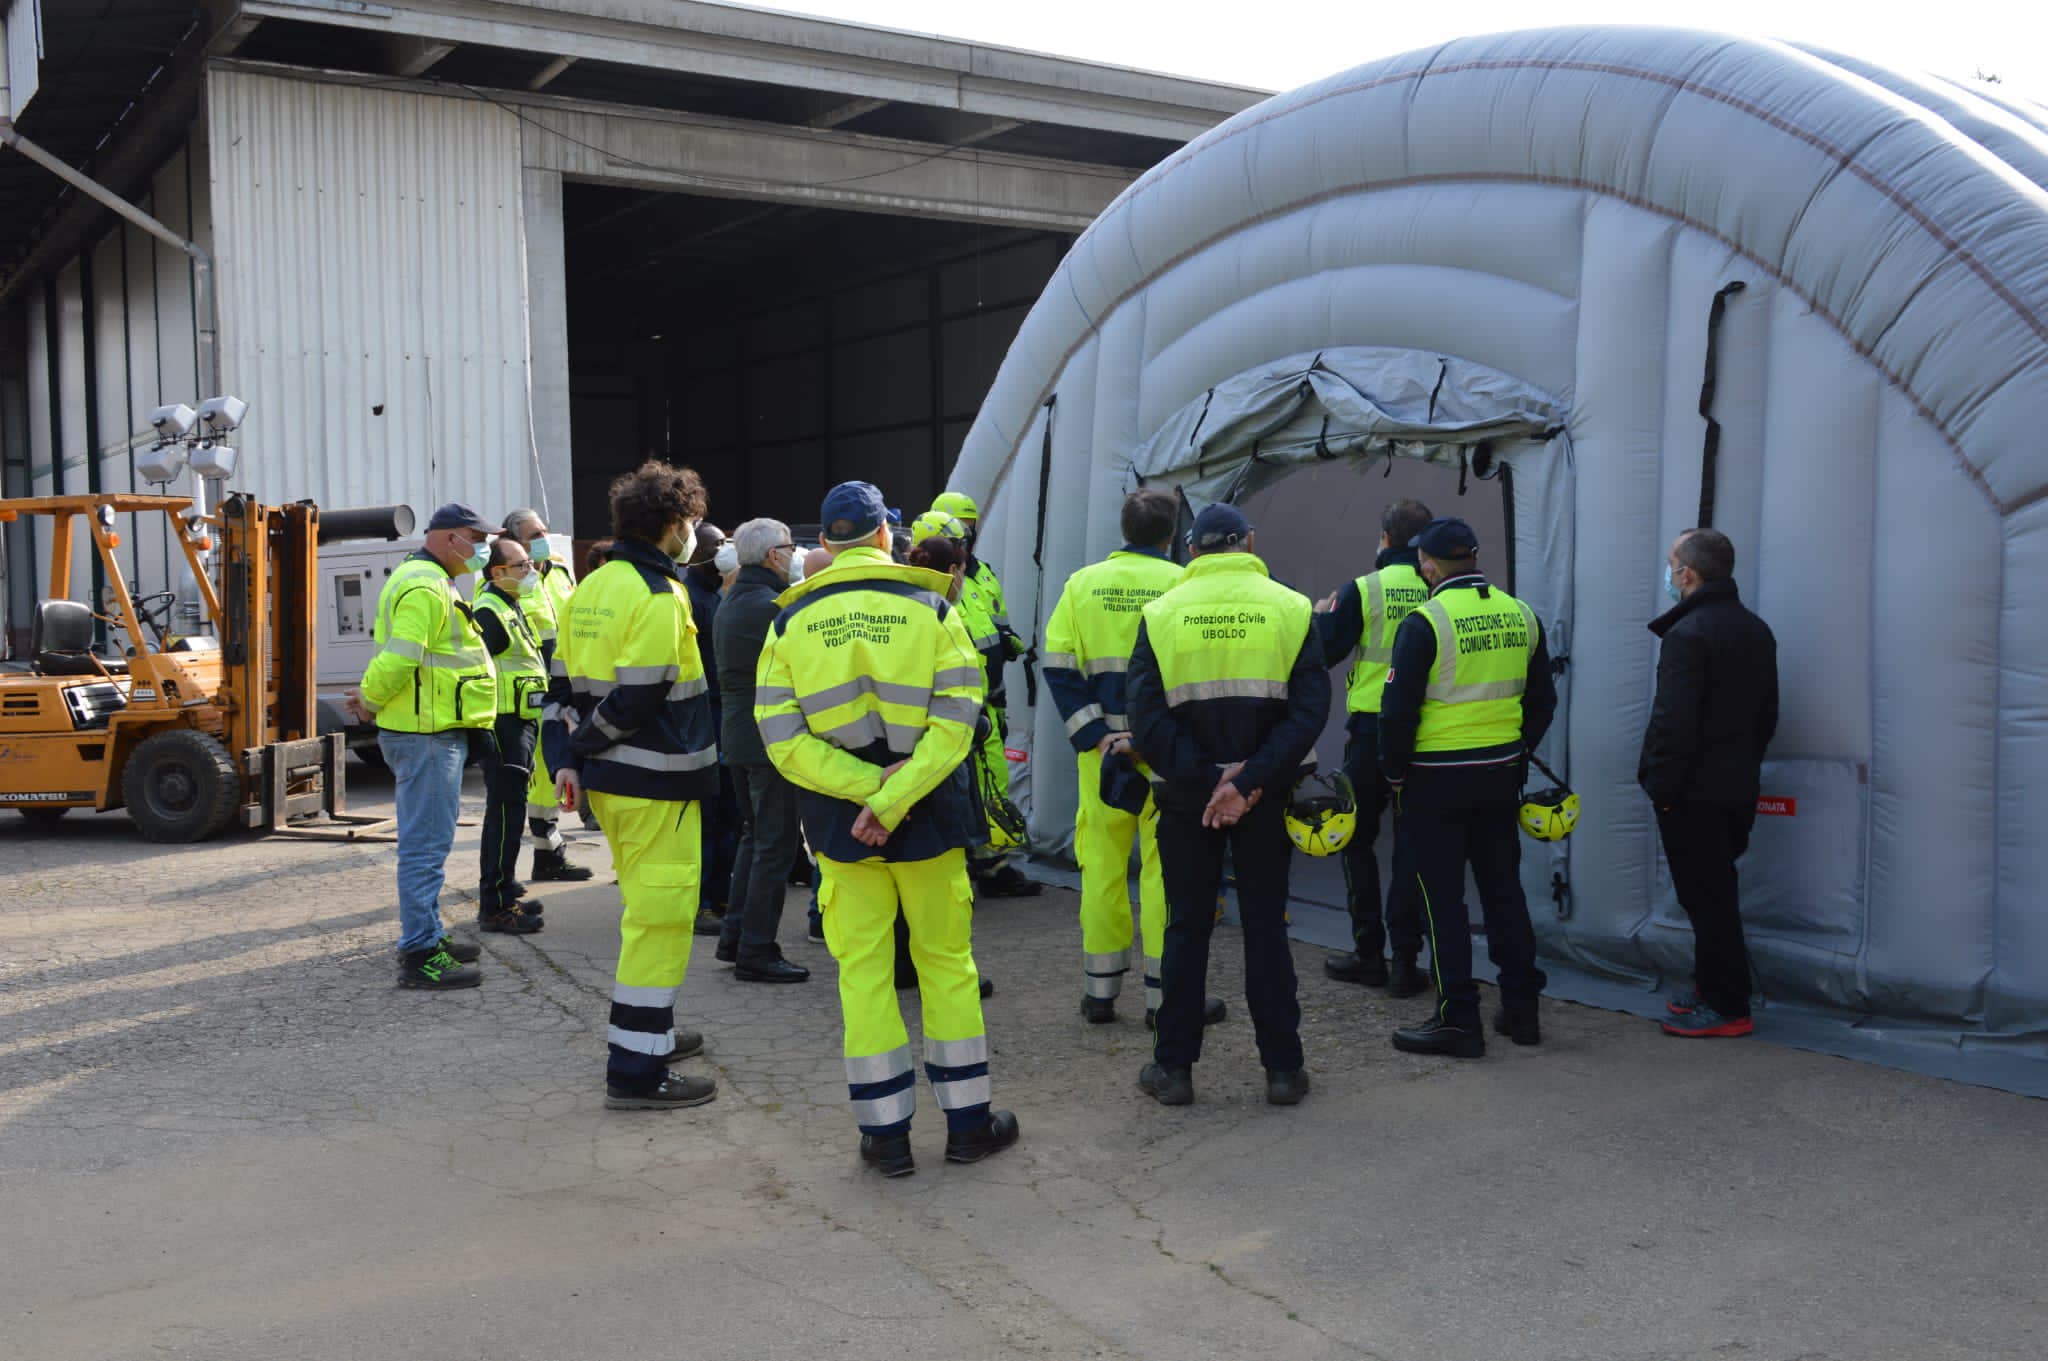 Protezione civile di Uboldo al corso per montaggio tenda pneumatica